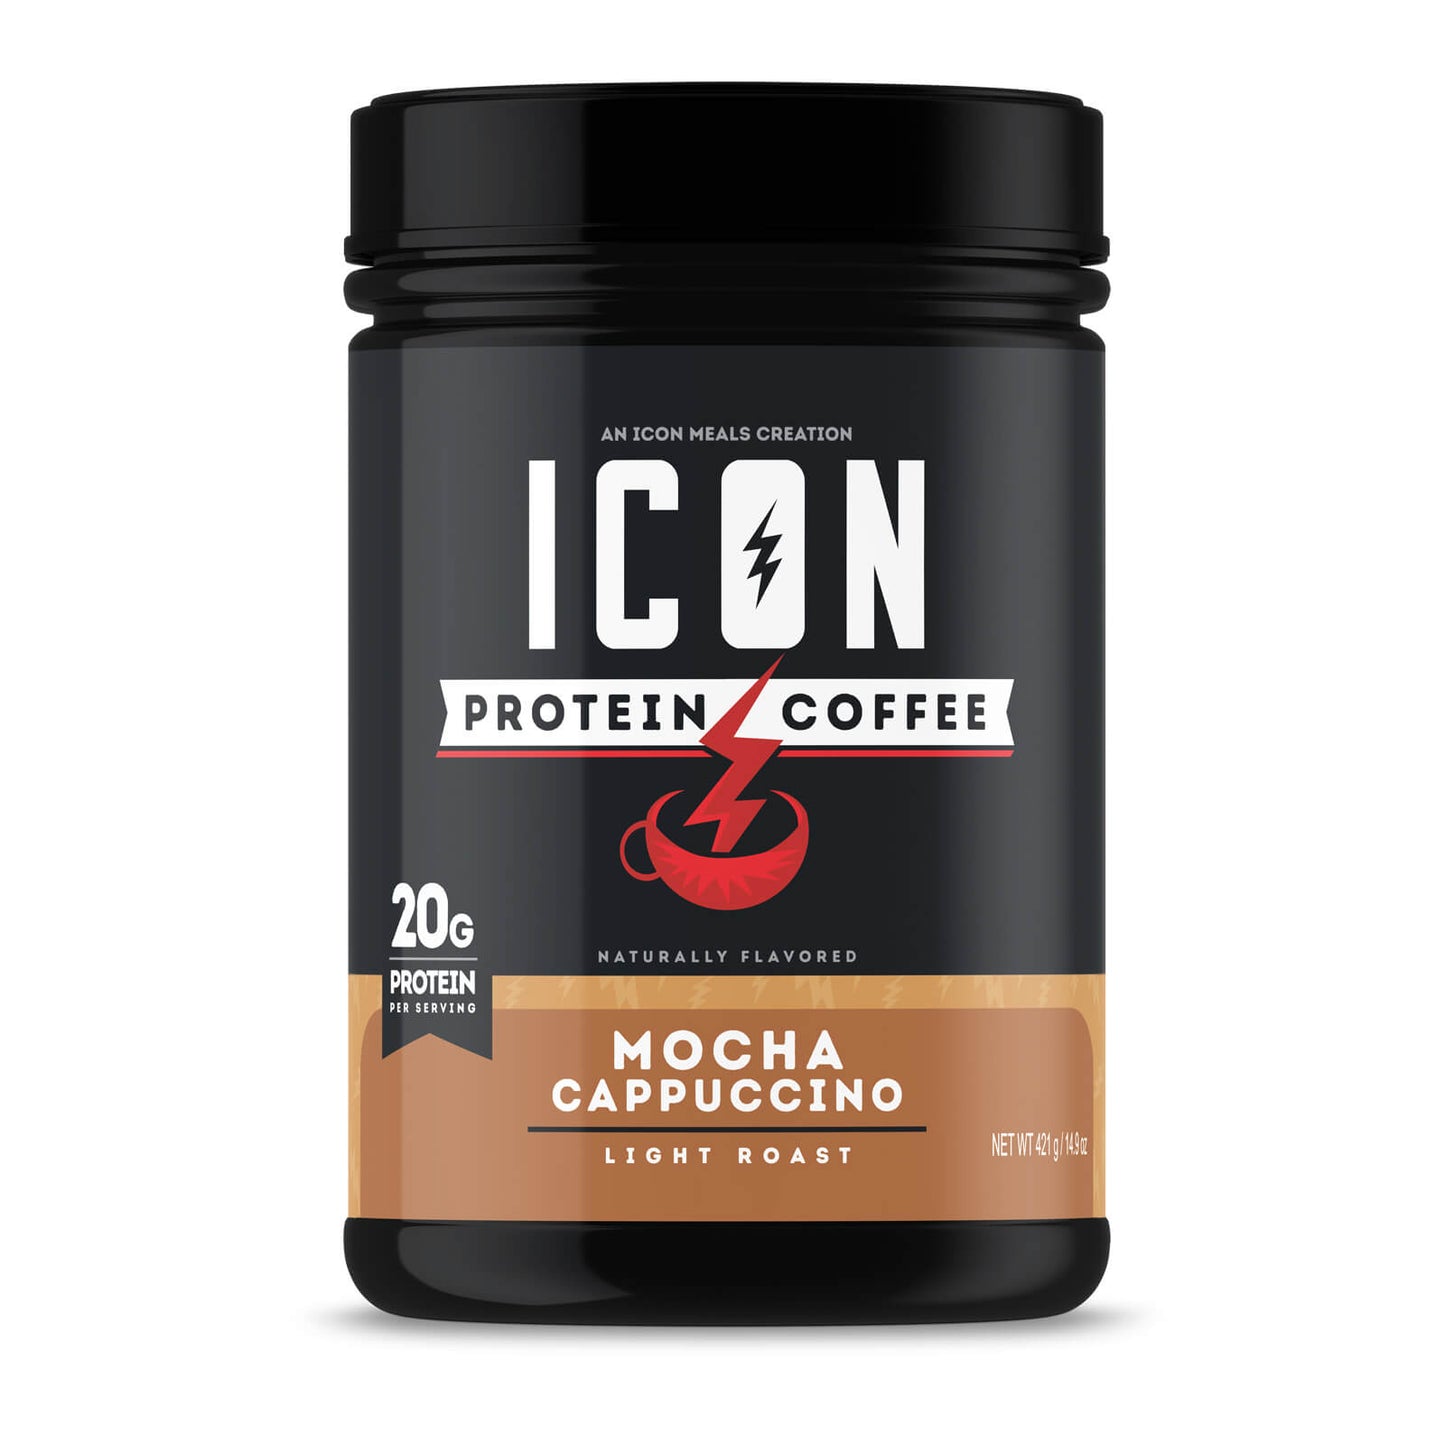 Mocha Cappuccino Protein Coffee